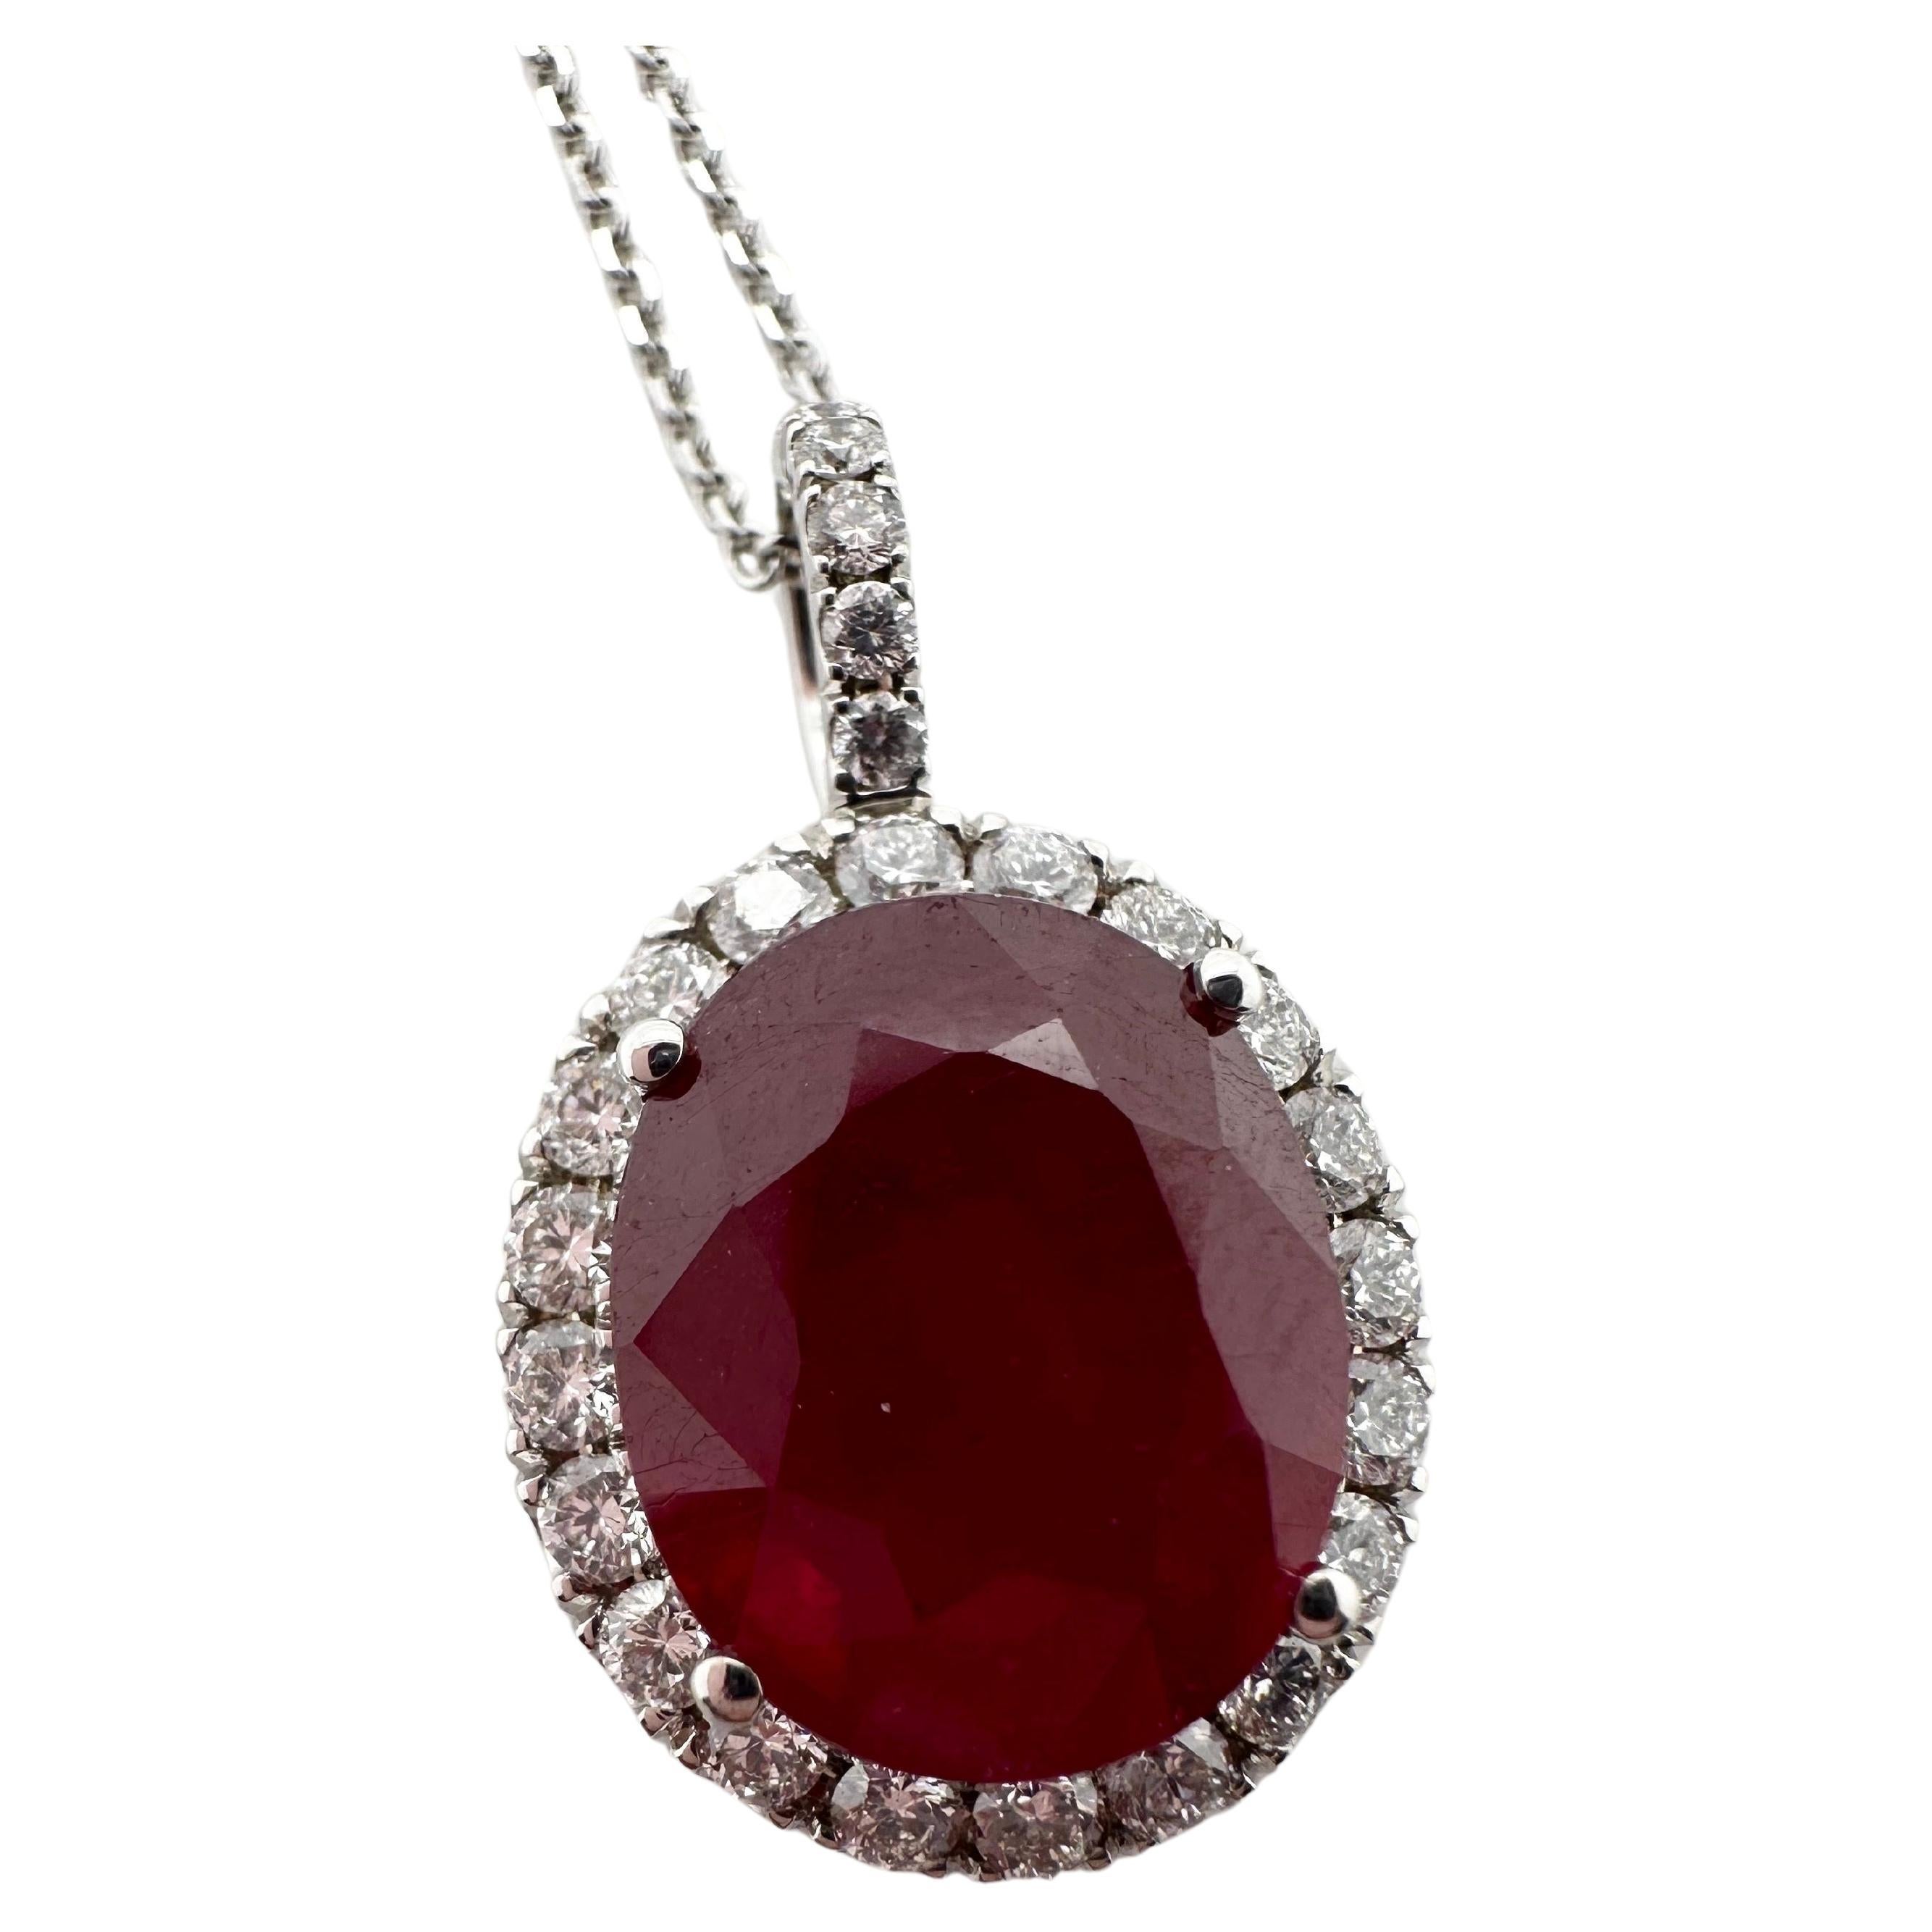 Oval ruby diamond pendant necklace 18KT gold